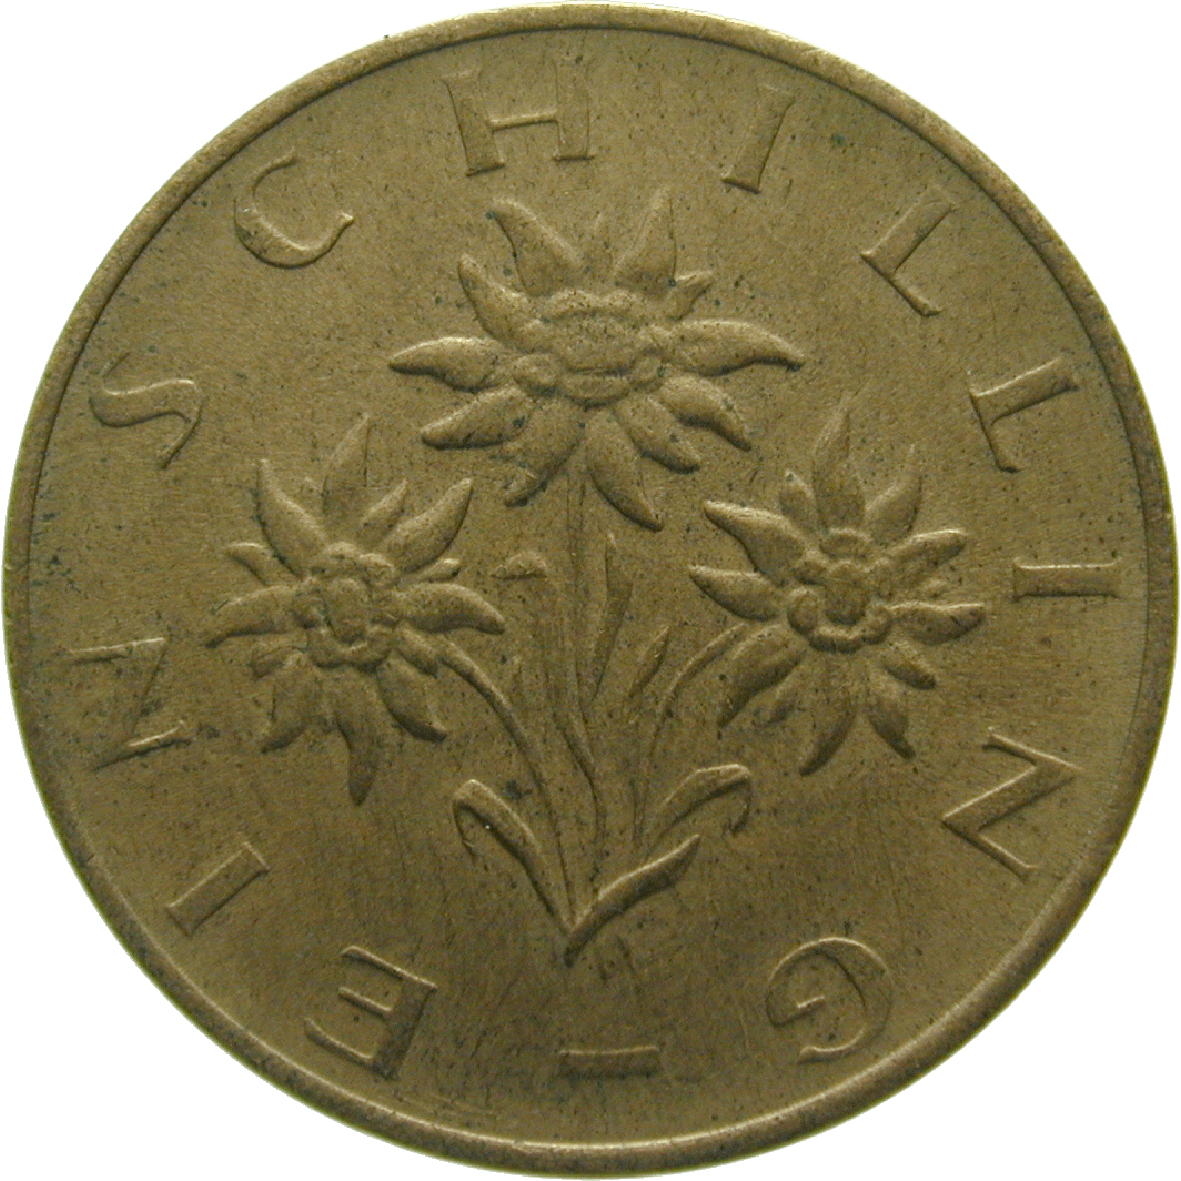 Republic of Austria, 1 Schilling 1974 (reverse)